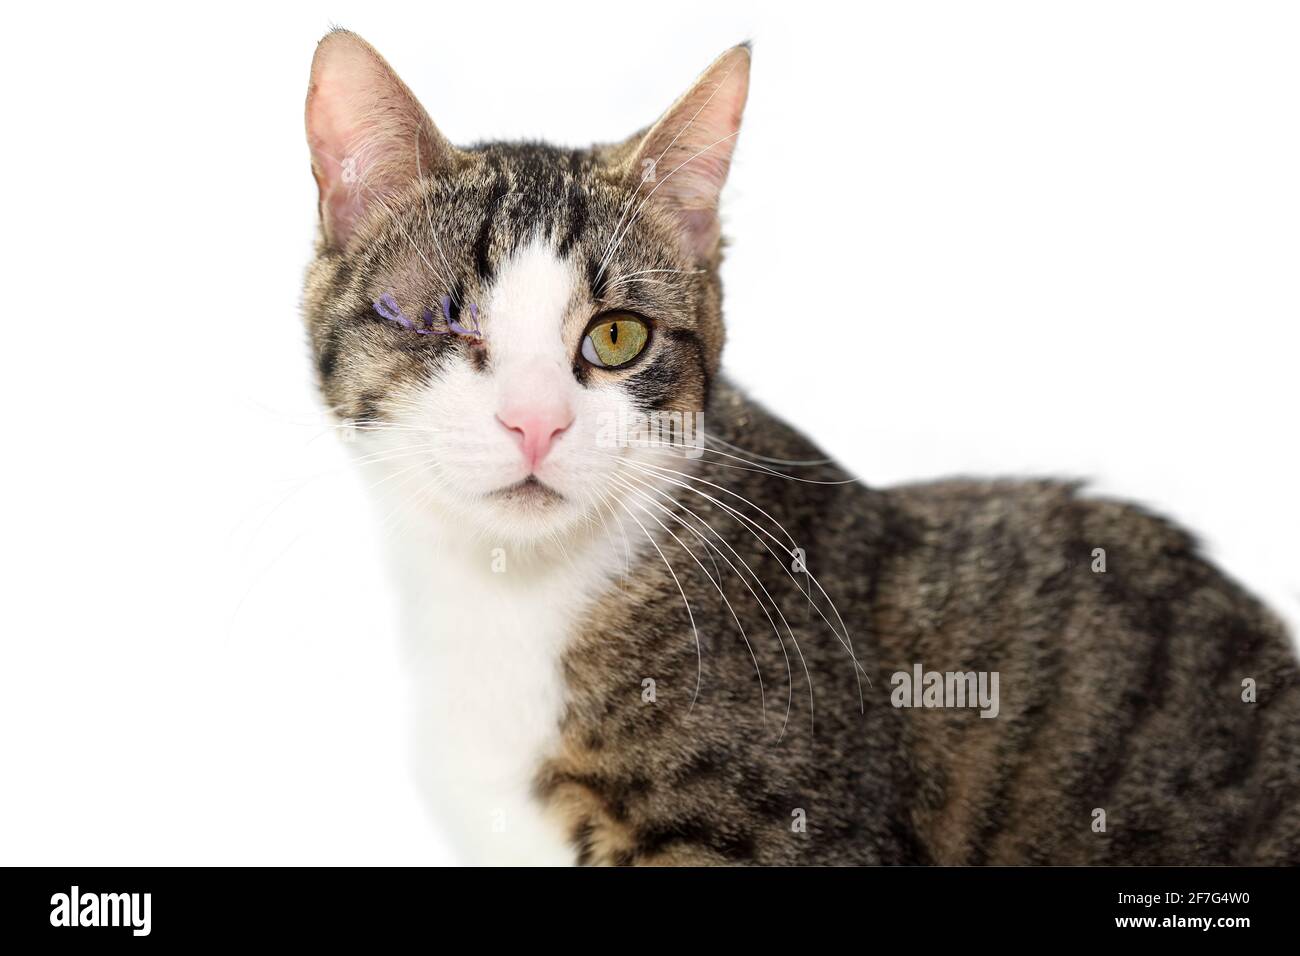 Retrato cercano de un gato tabby blanco gris después de la enucleación  (cirugía de extirpación de los ojos), aún con las suturas quirúrgicas.  Adorable gatito de un ojo, aislado Fotografía de stock -